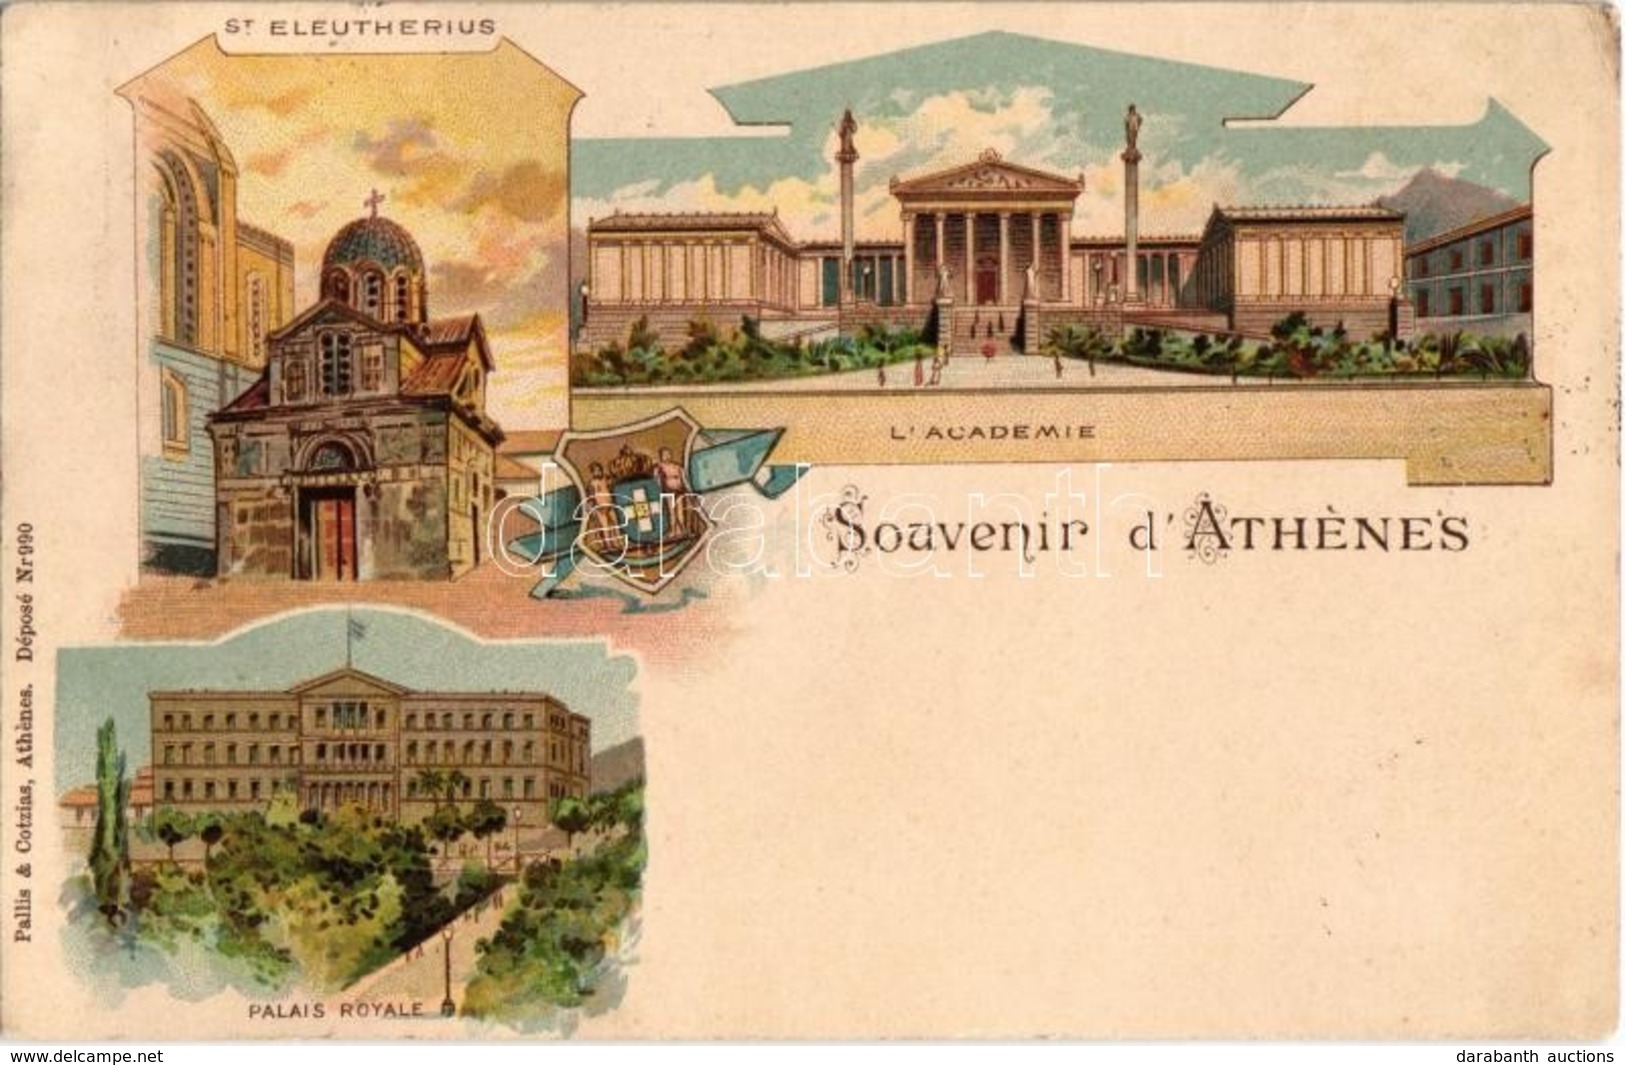 T2/T3 1899 (Vorläufer!) Athens, Athénes; St. Eleutherius, Palais Royale, L'Academie. Pallis & Cotzias Litho  (EK) - Non Classés